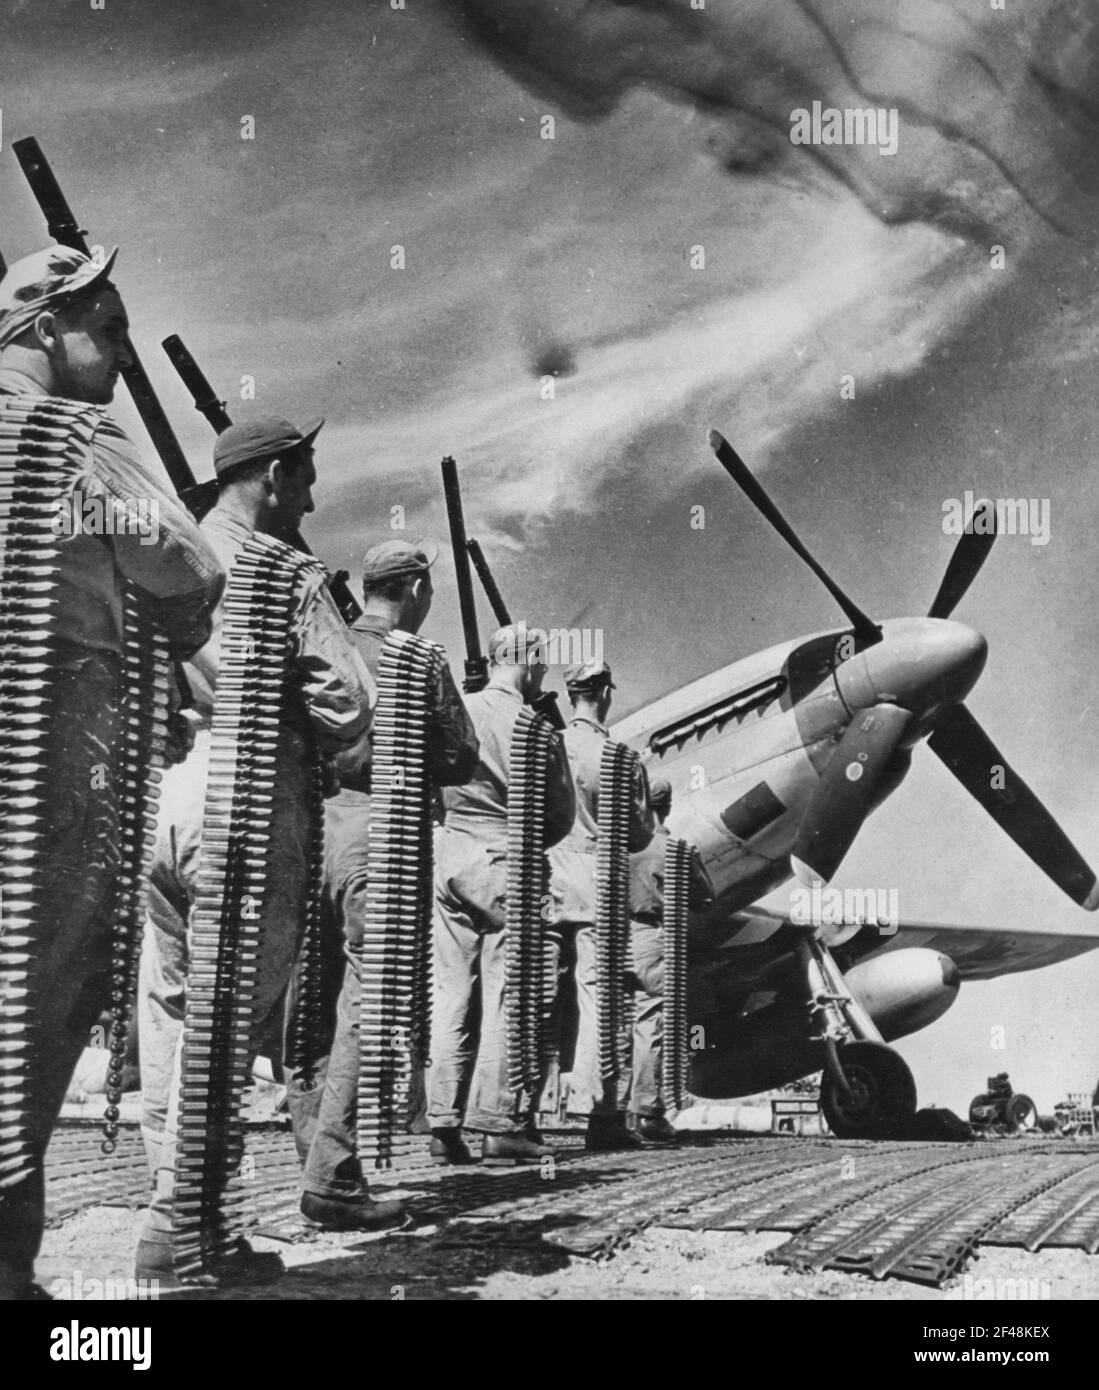 POTENZA DI FUOCO DEL COMBATTENTE P-51 MUSTANG. Queste sono le sei mitragliatrici del calibro di .50 usate nei nuovi combattenti della 8th Air Force P-51 Mustang dell'esercito degli Stati Uniti. Le cinghie delle cartucce trasportate rappresentano la quantità utilizzata da una sola pistola su un volo Foto Stock